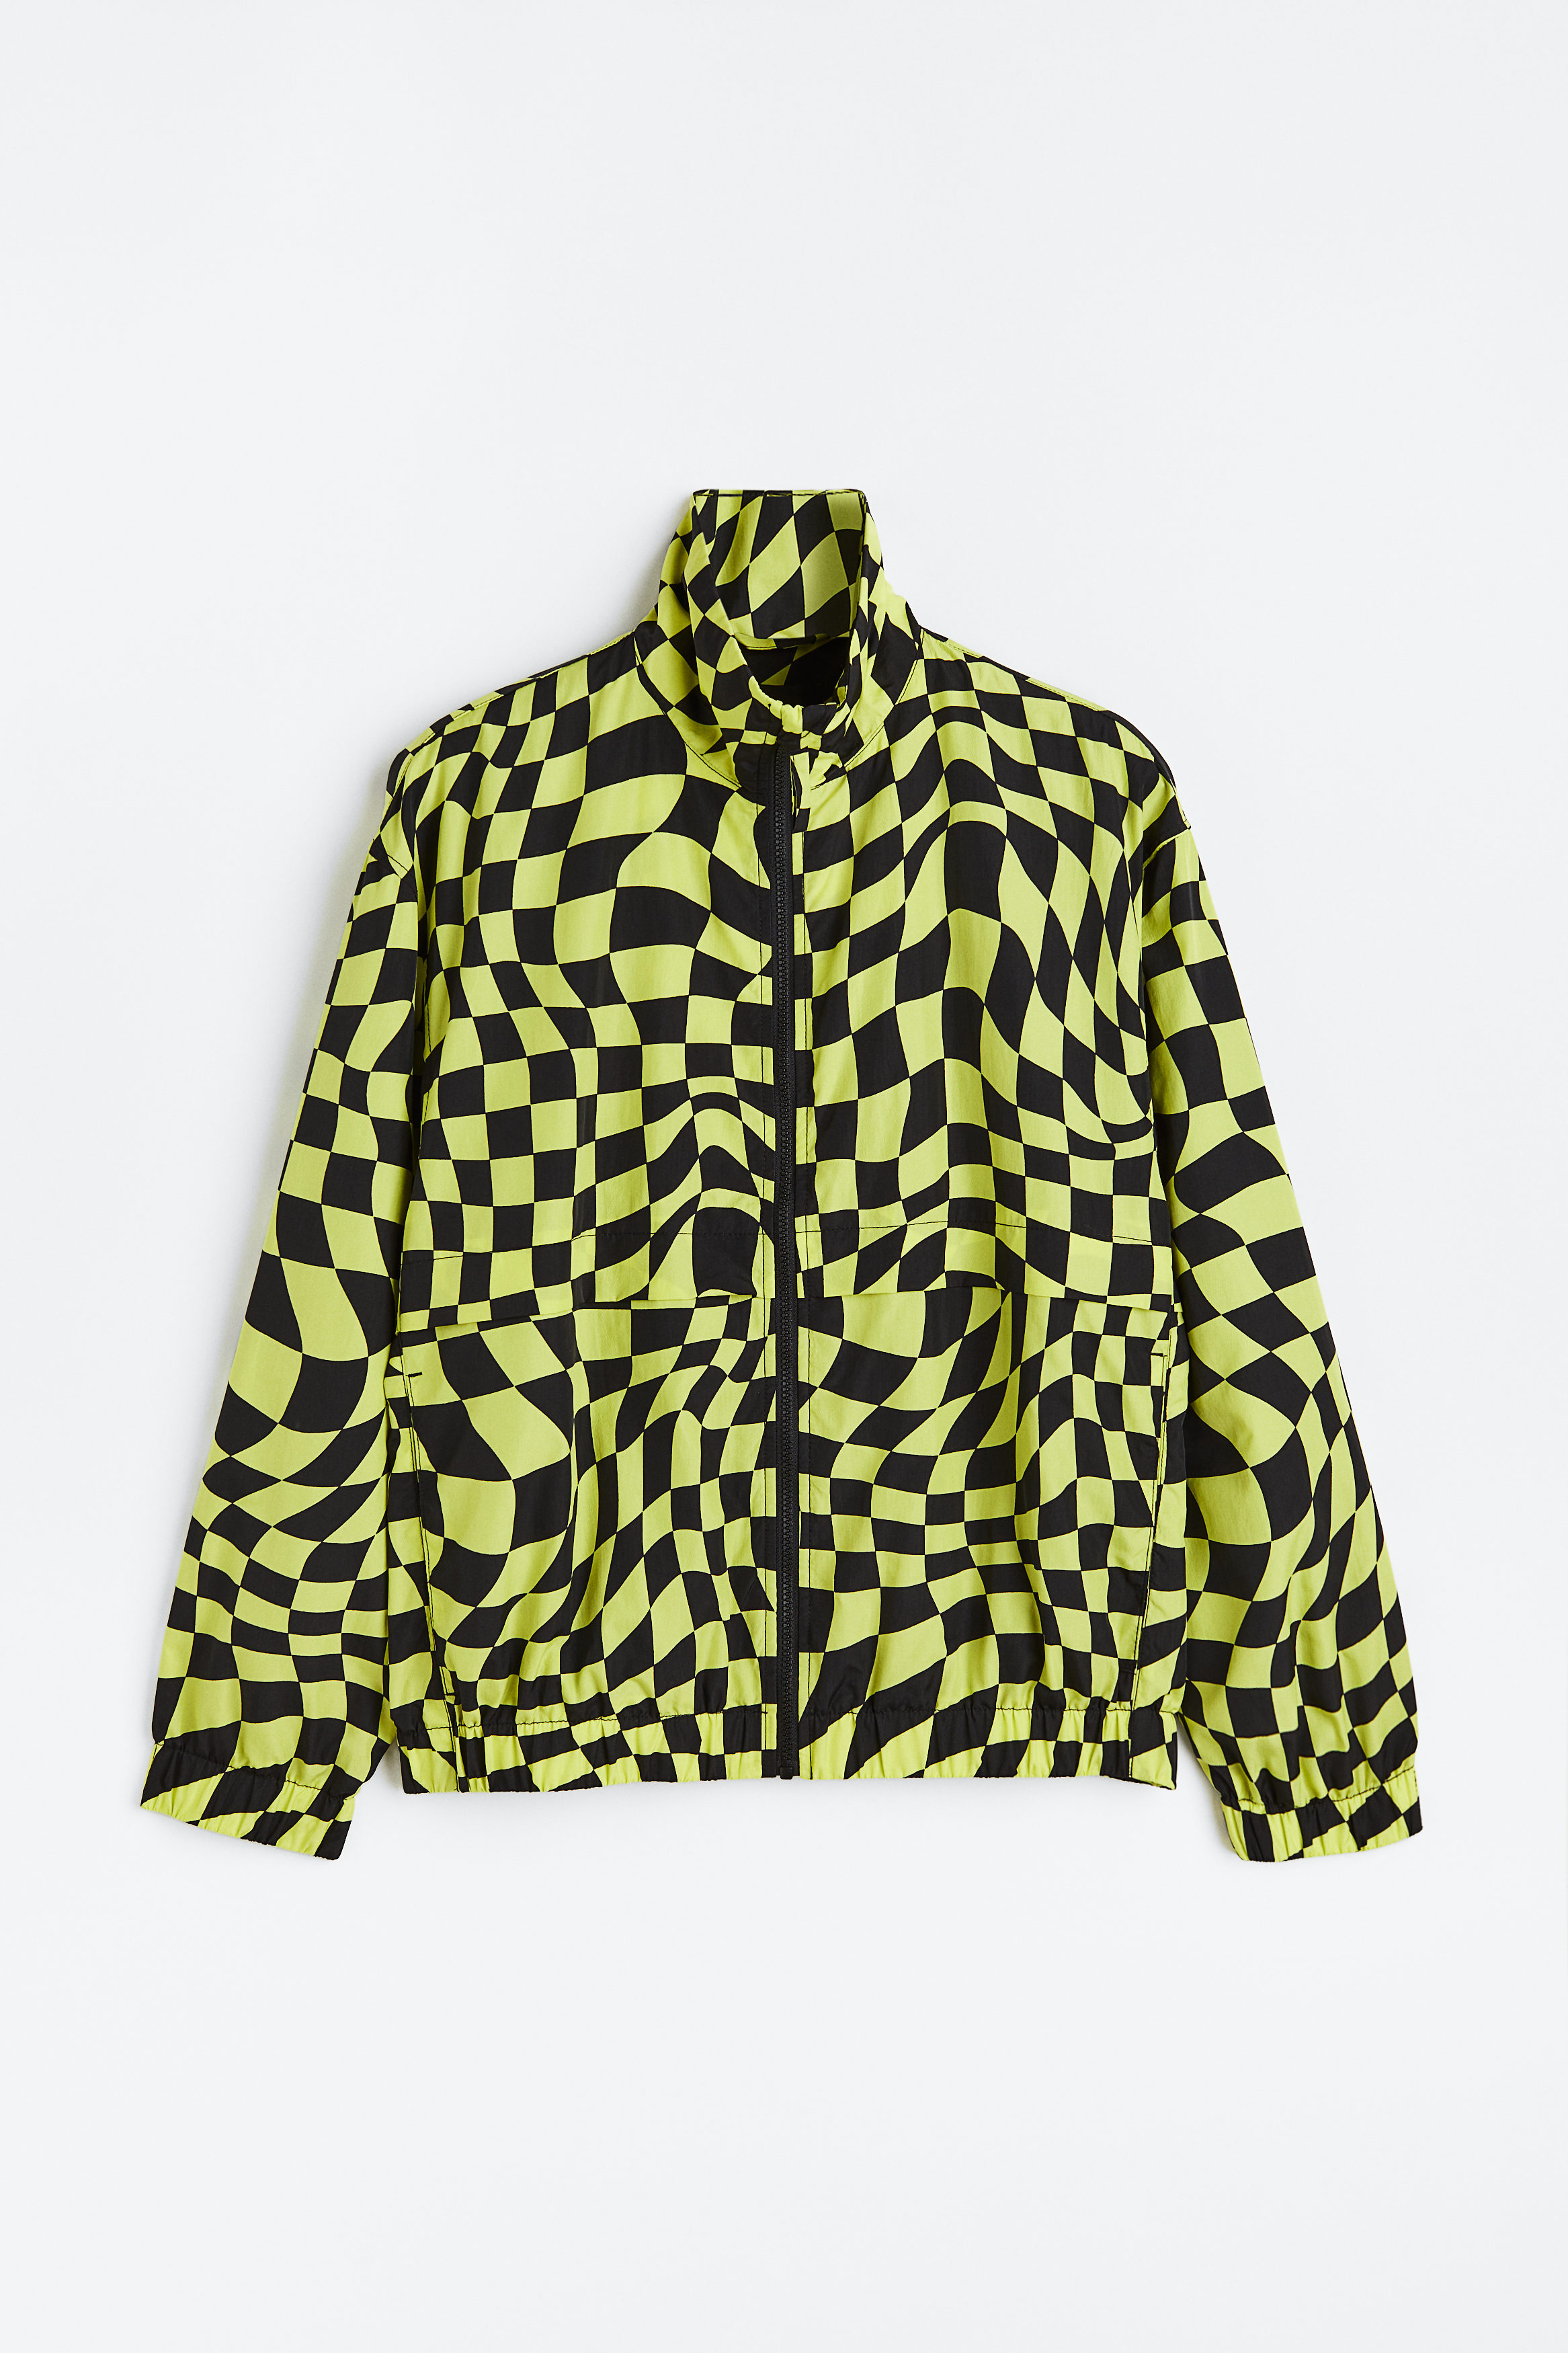 Billede af H&M Træningsjakke I Nylon Gul/sortternet, Træningsjakker. Farve: Yellow/black checked størrelse XS